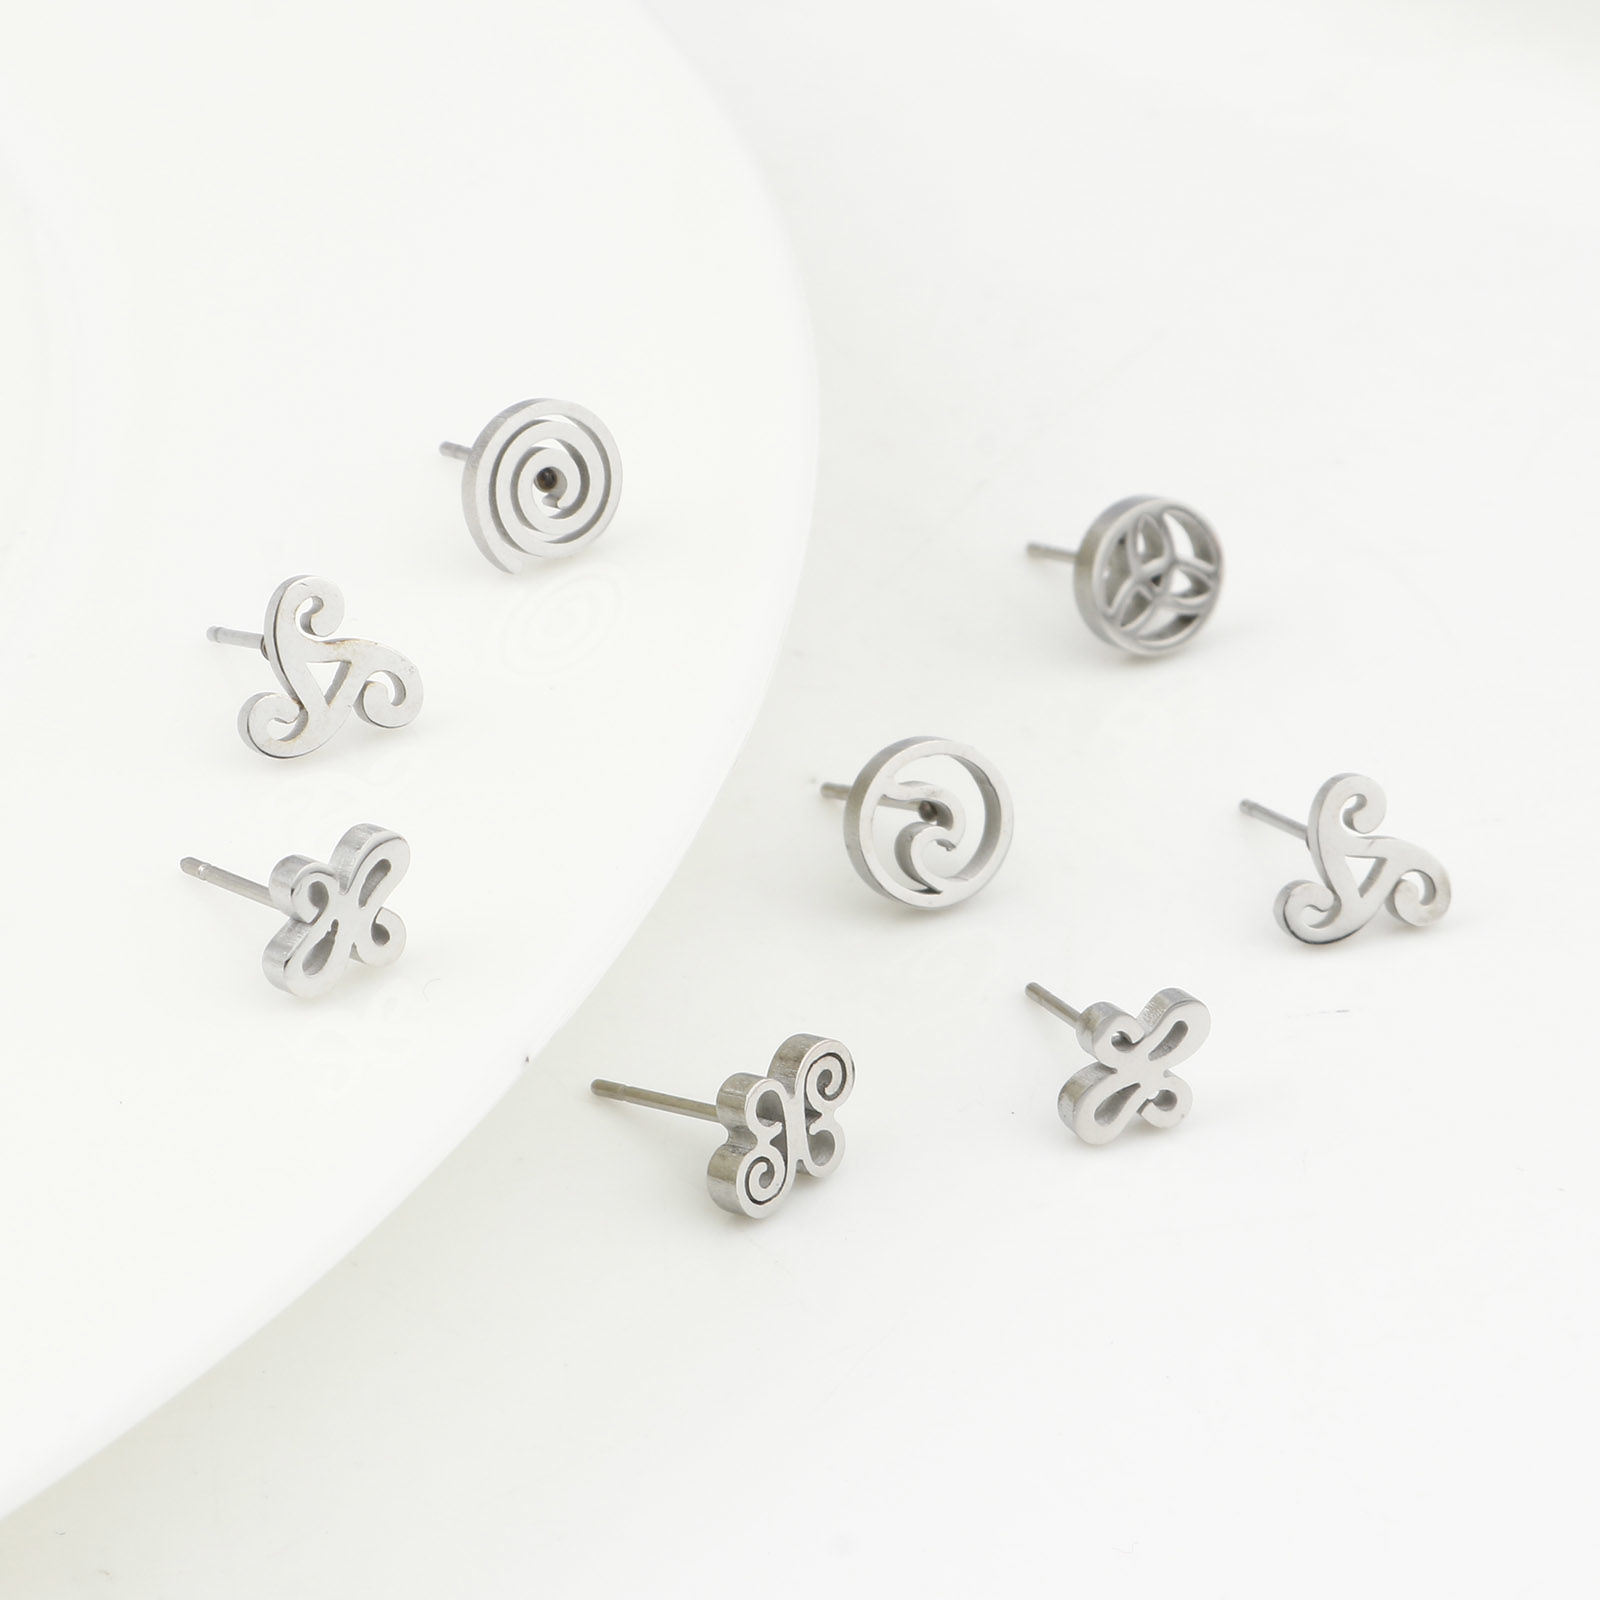 Bild von Edelstahl Ohrring Ohrstecker Silberfarbe Schmetterling Keltisch Knoten Hohl 6 Paare